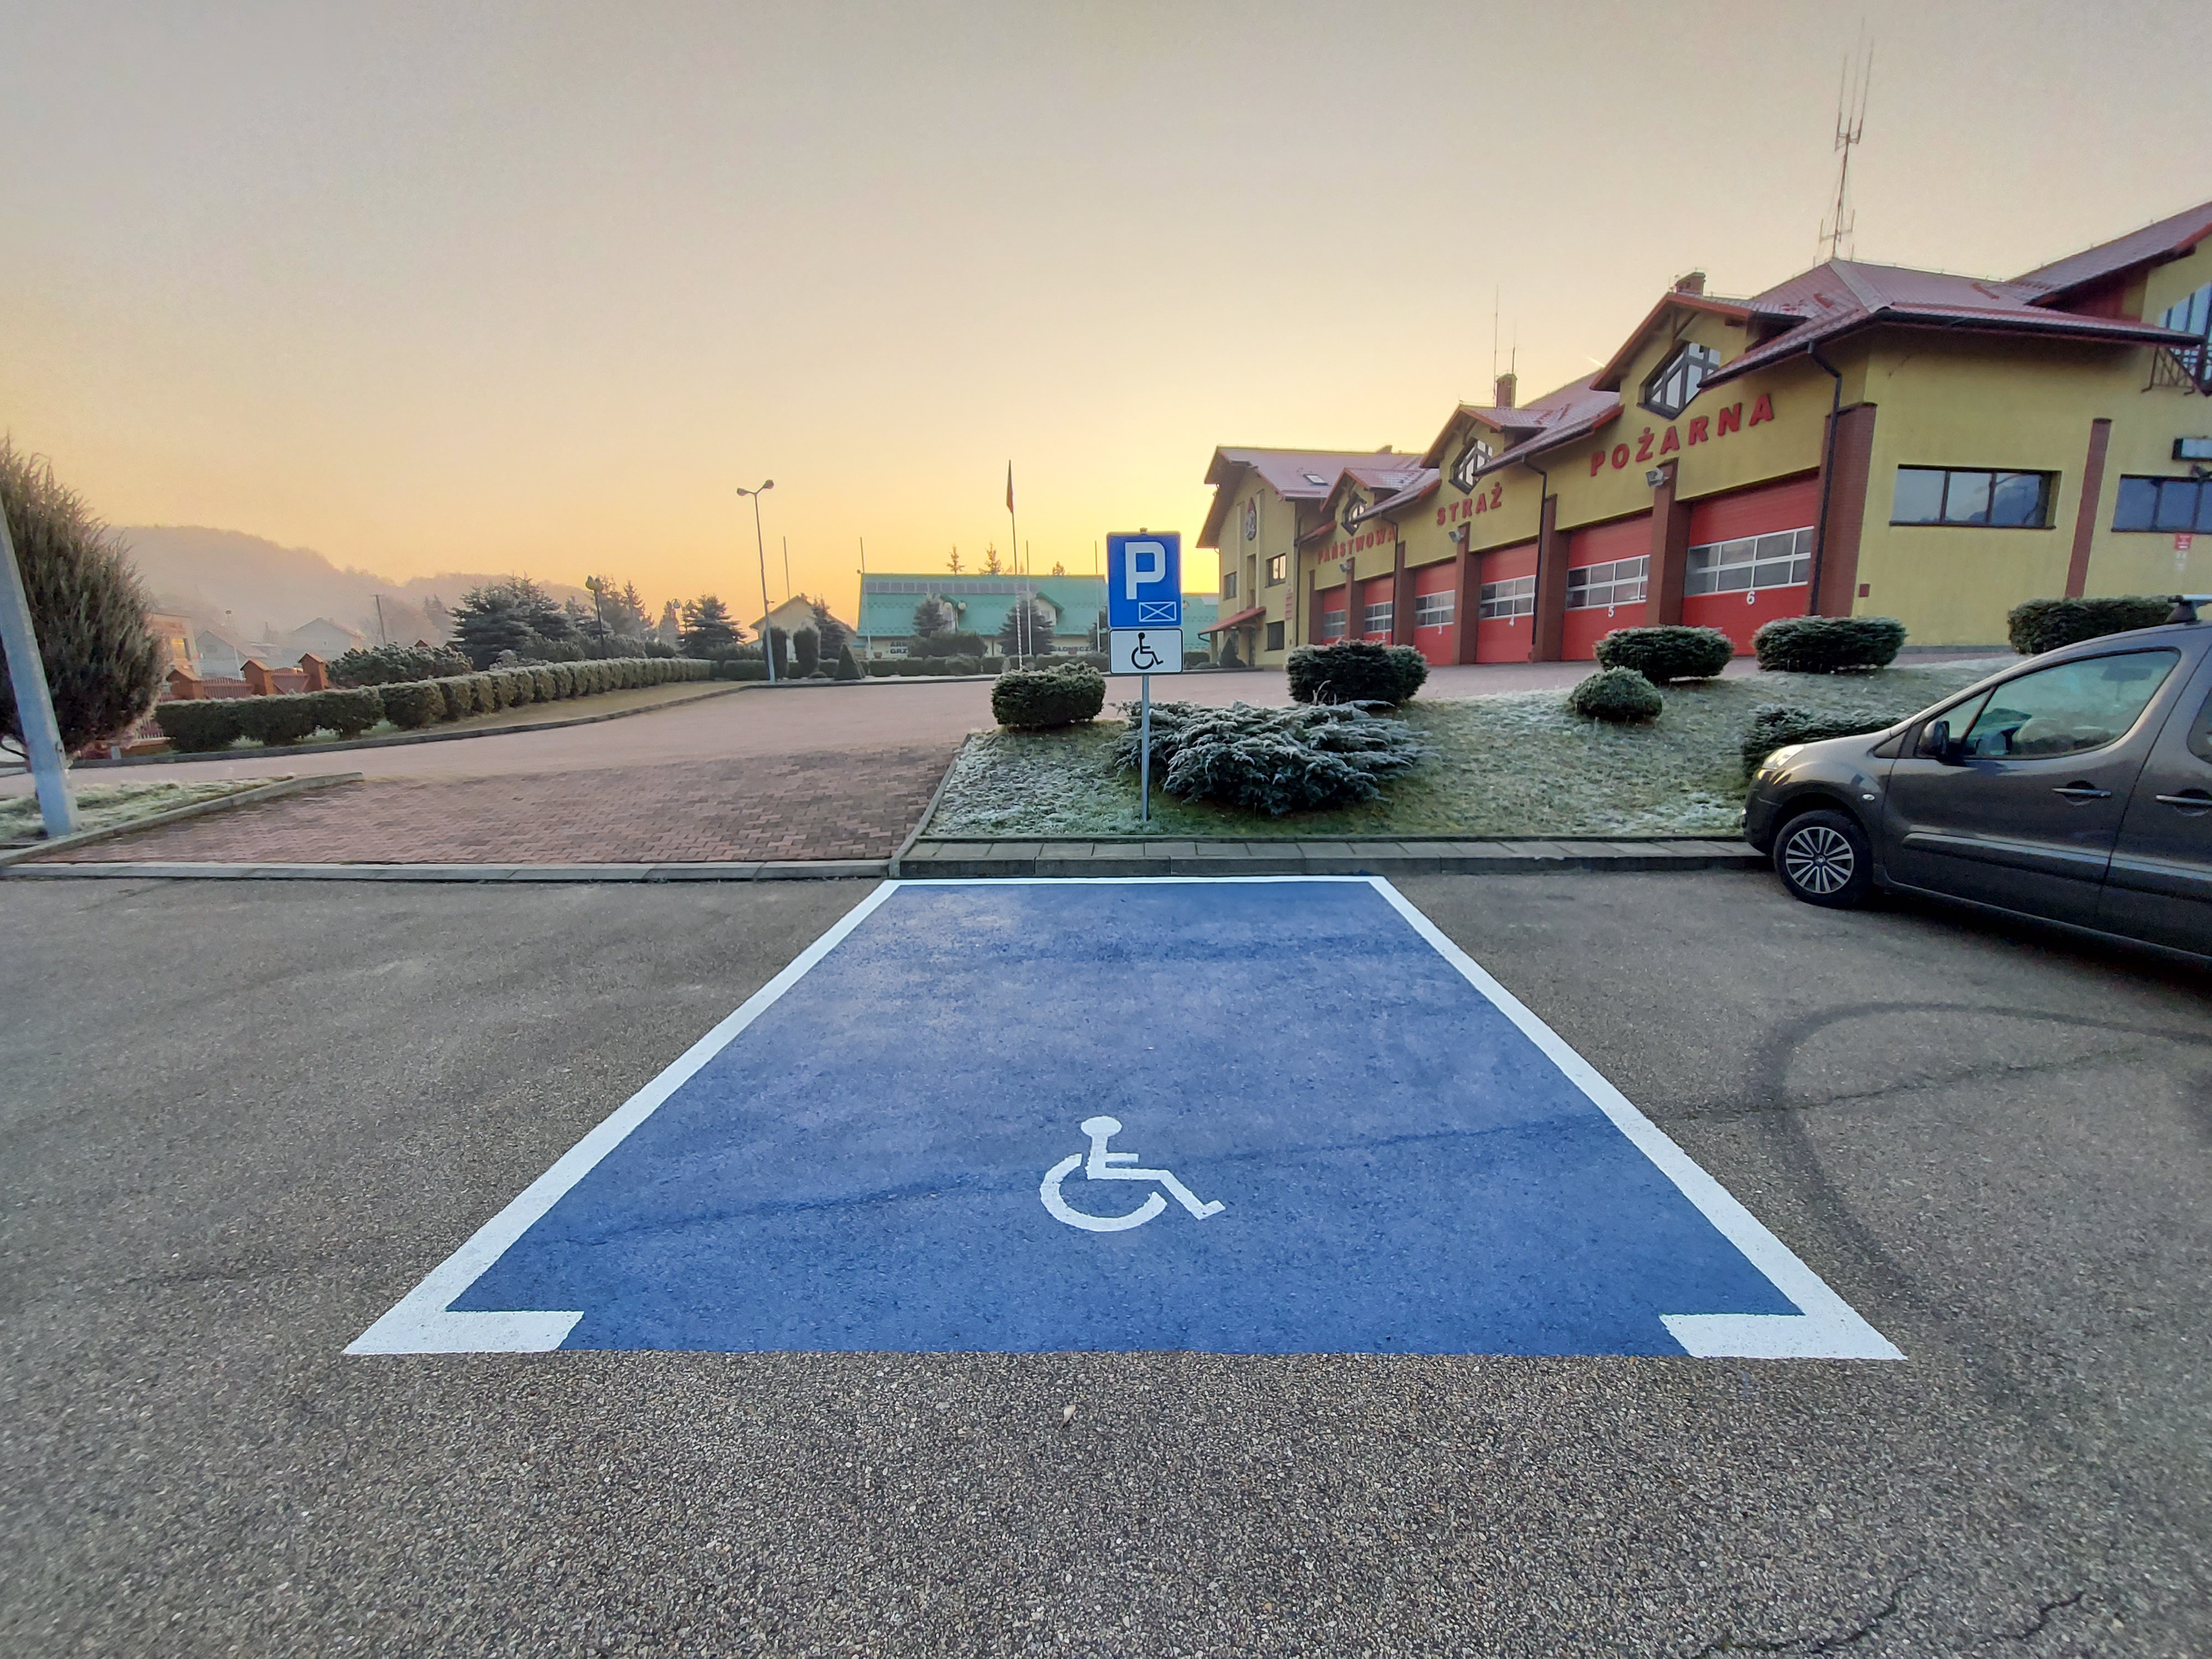 Zdjęcie przedstawia miejsce parkingowe dla osób niepełnosprawnych